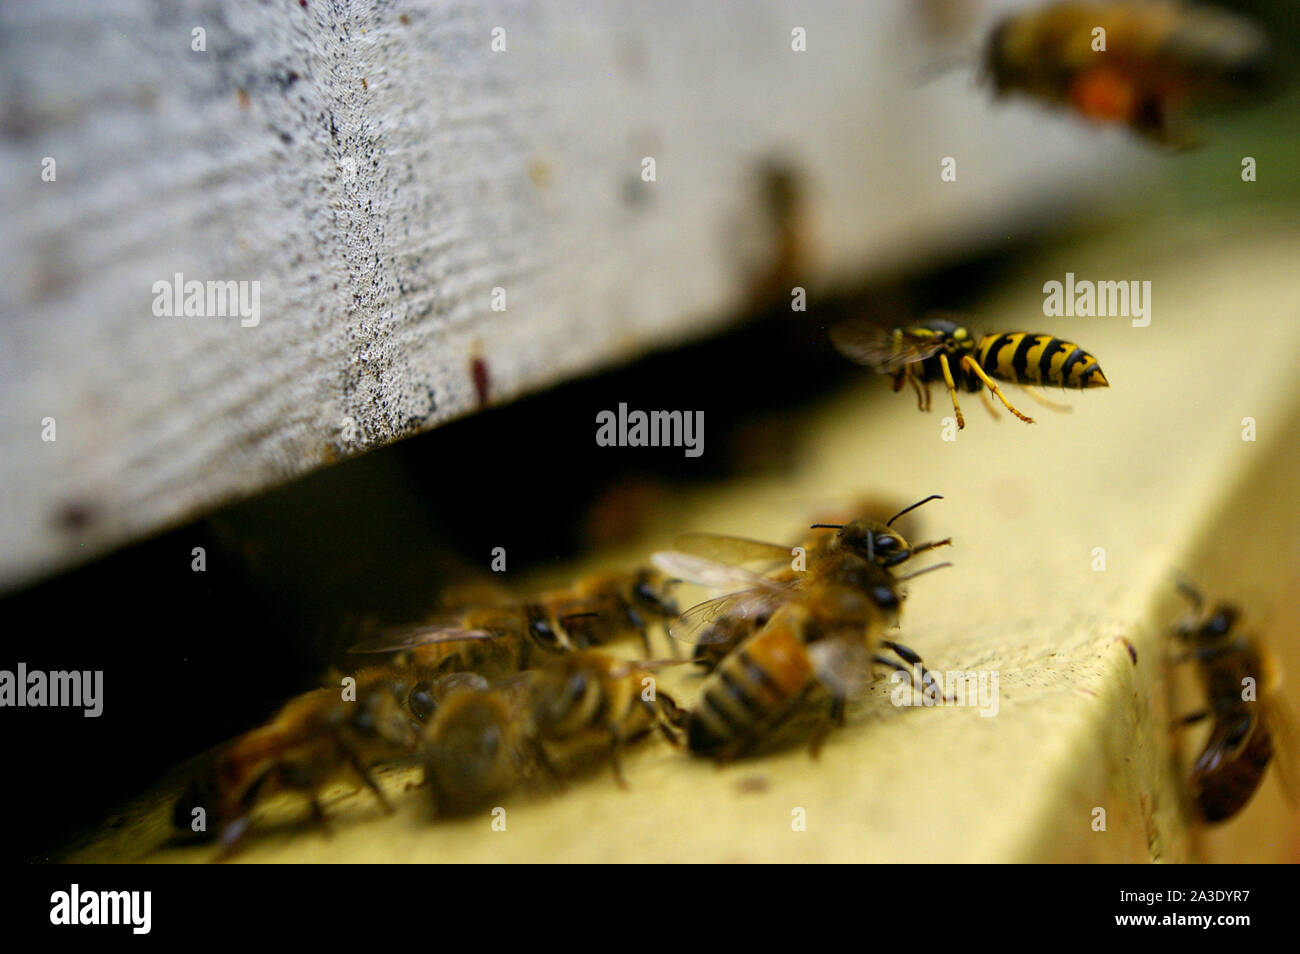 Les abeilles défendent leur ruche Protection contre les attaques Banque D'Images